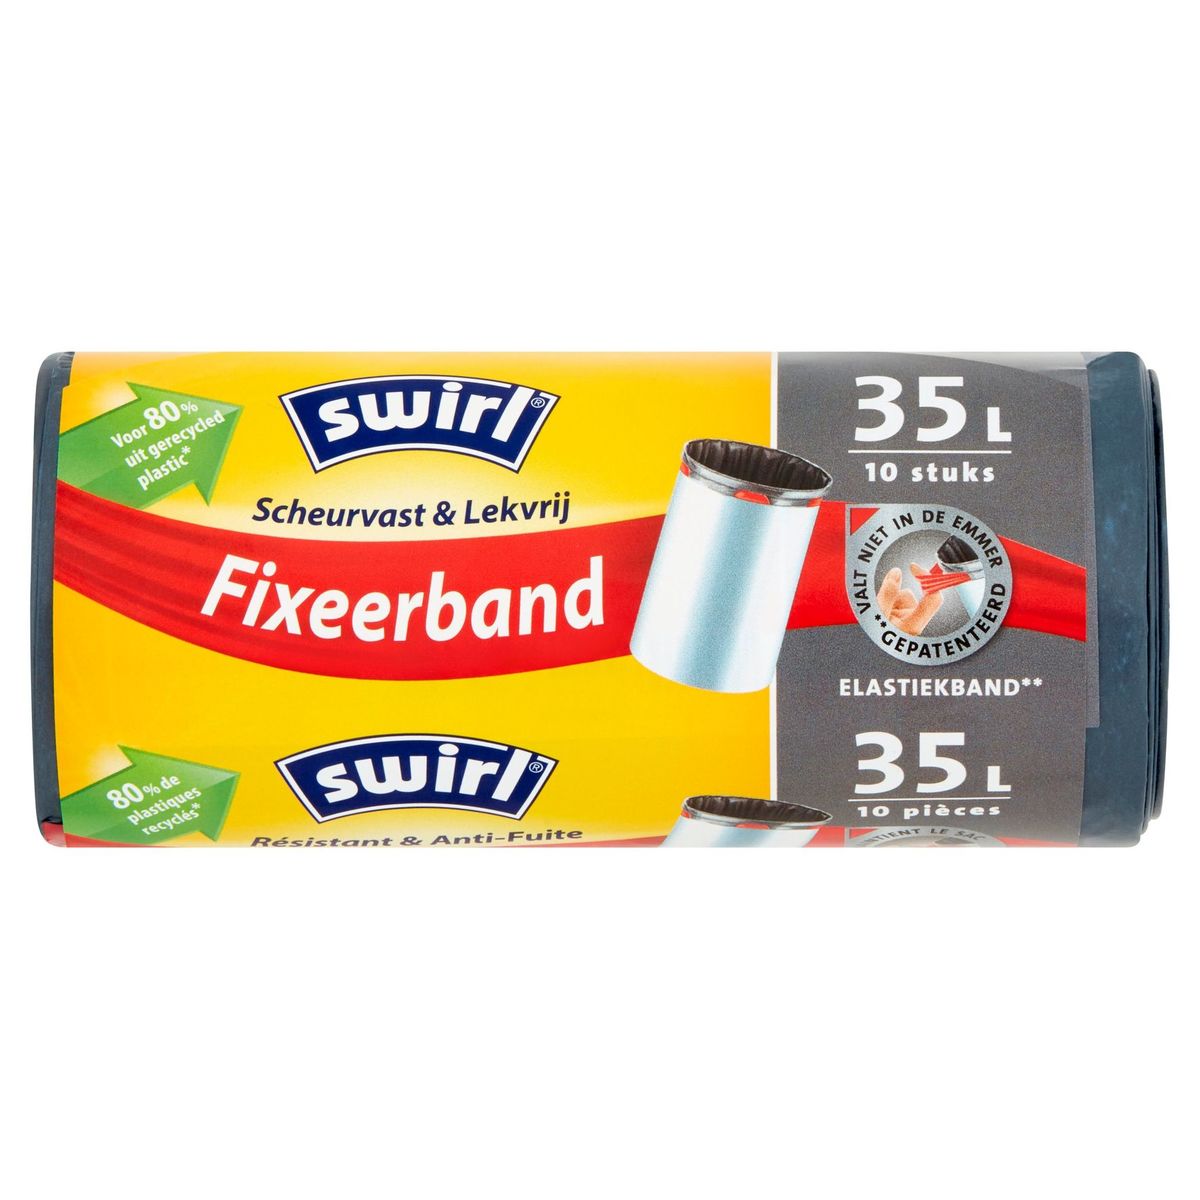 Swirl Fixeerband 35 L 10 Stuks